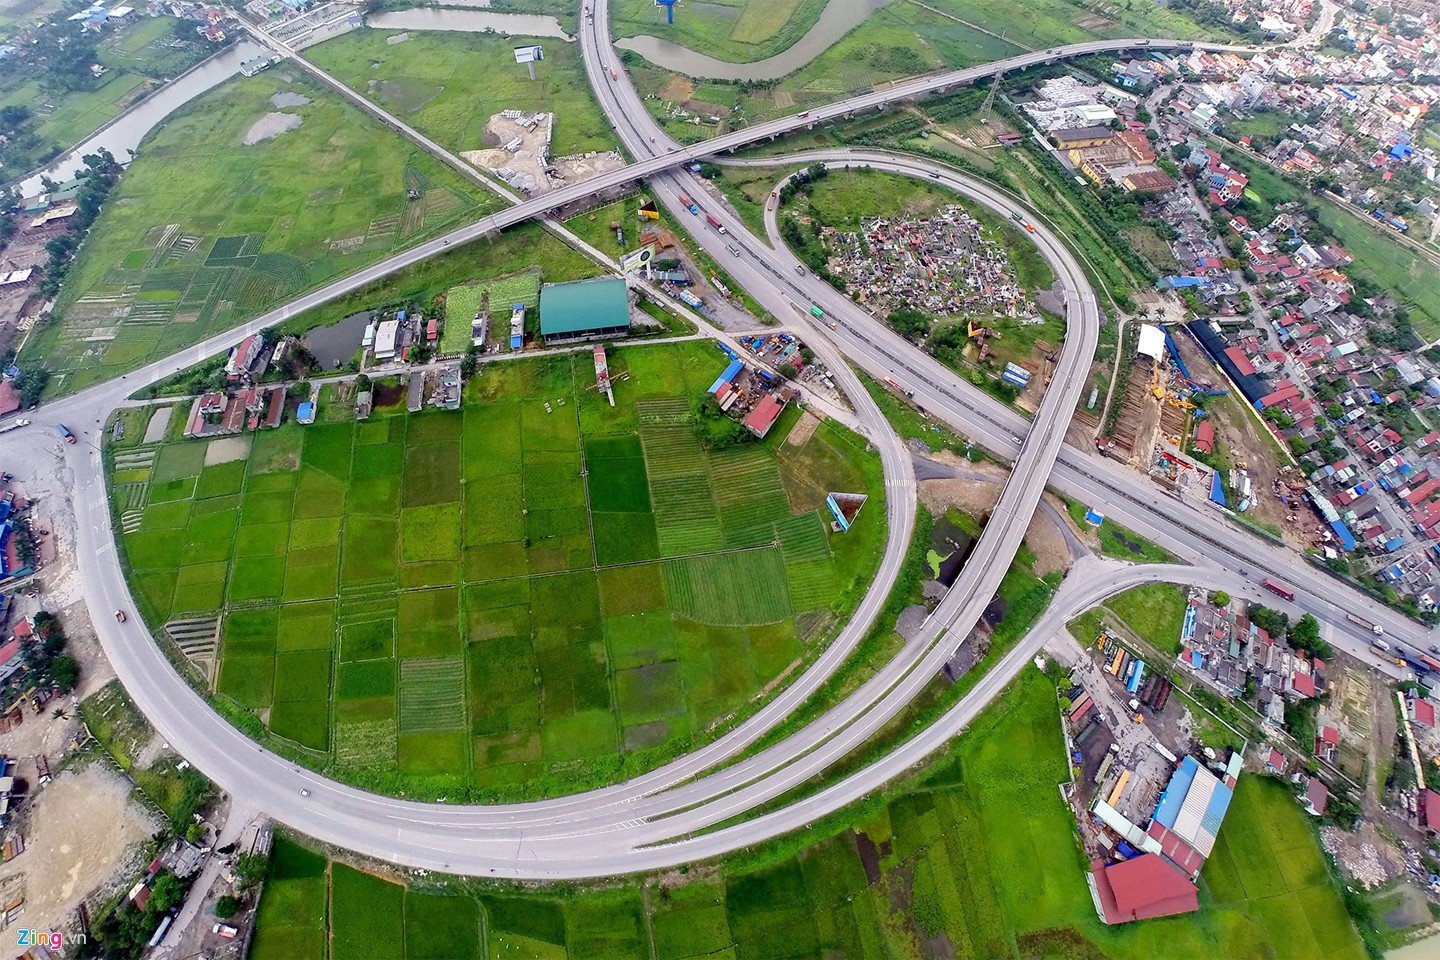 Đường cao tốc Hà Nội - Hải Phòng